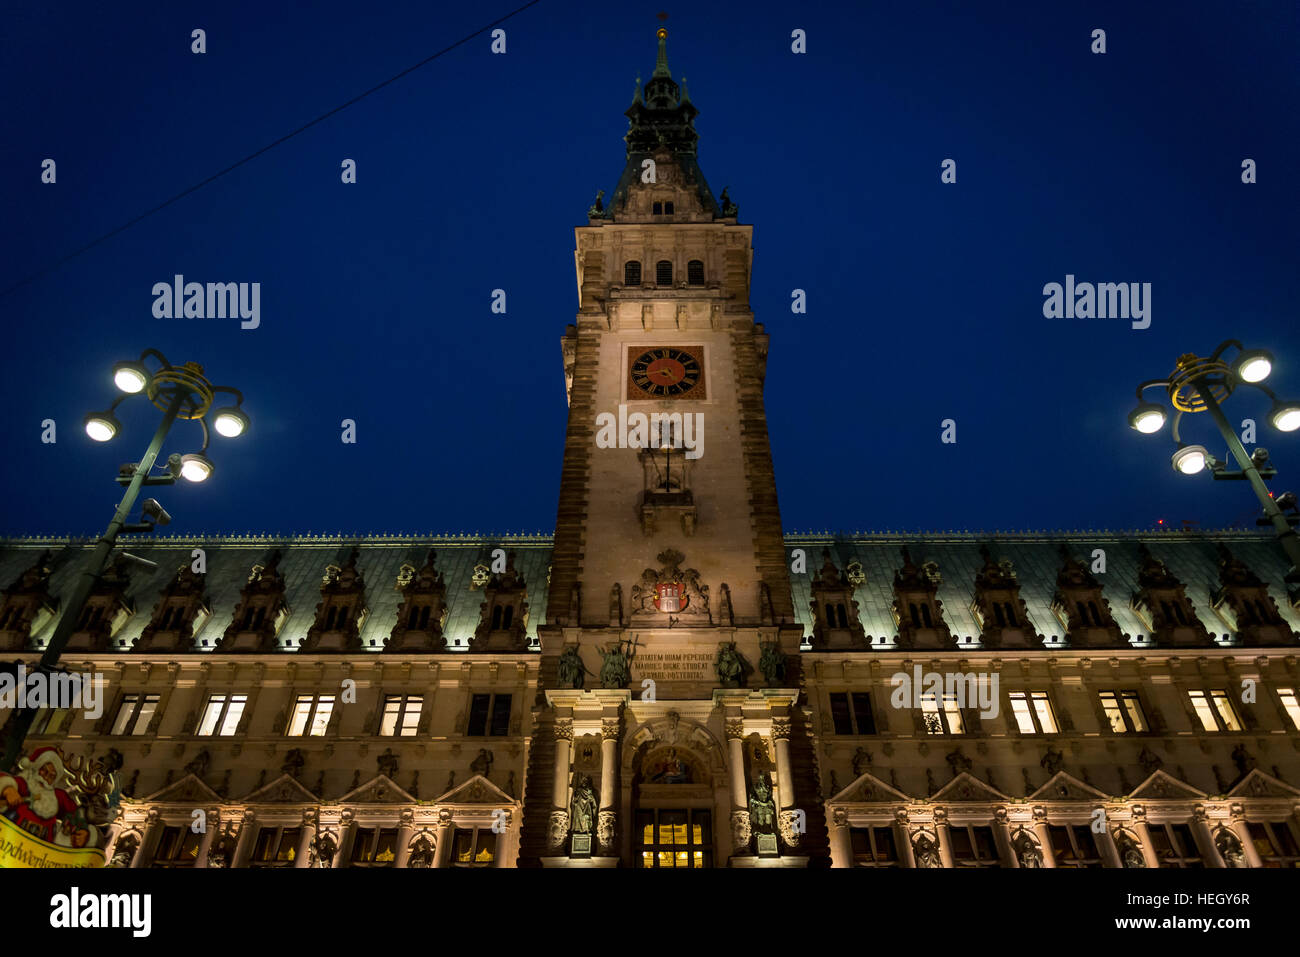 Rathaus, Renaissance Town Hall at night, Hamburg, Germany Stock Photo